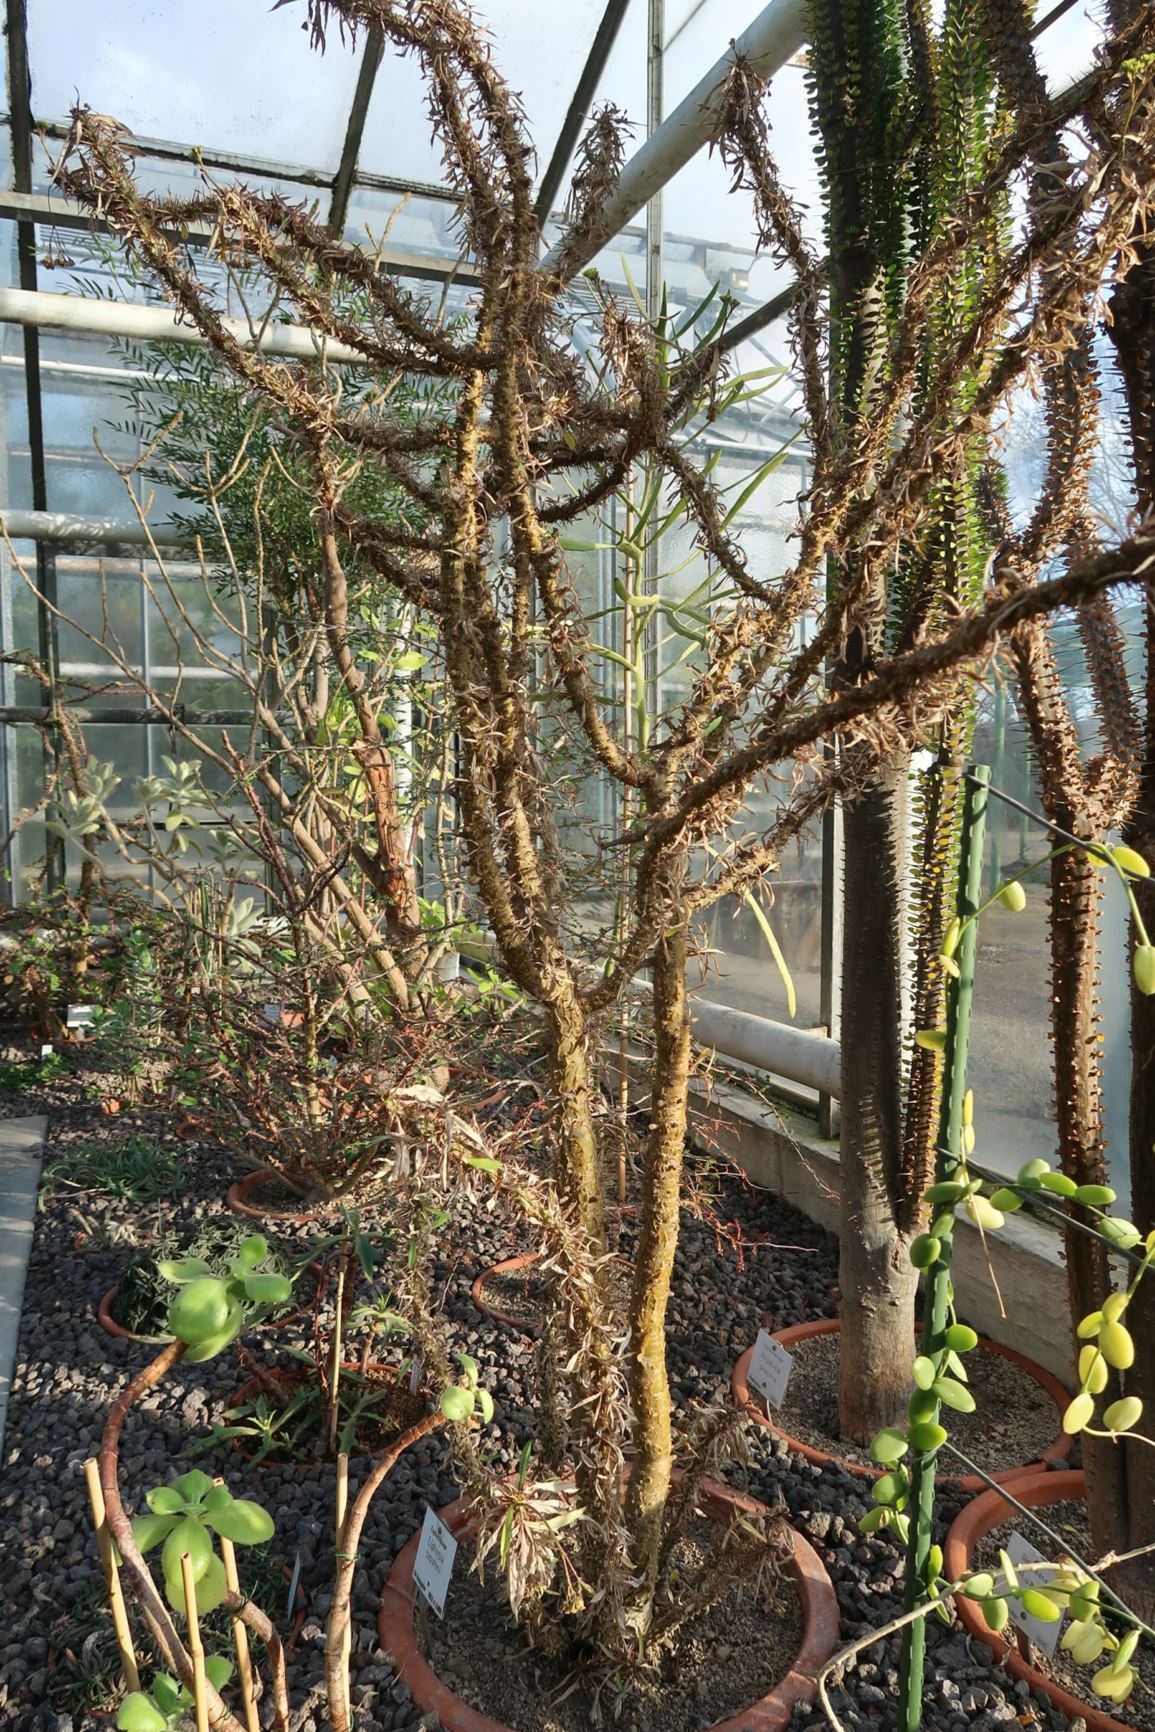 Euphorbia capuronii